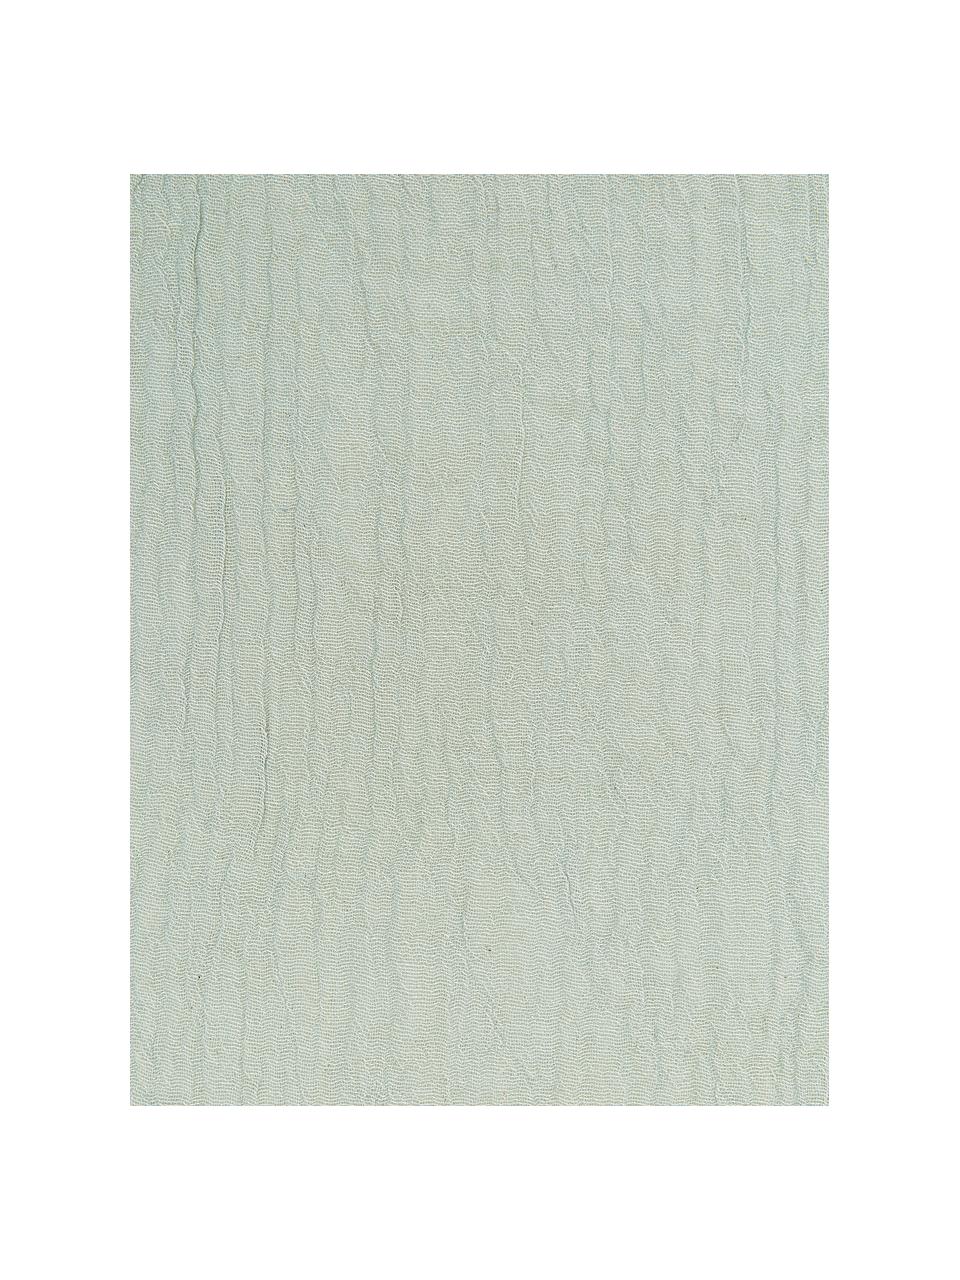 Serviette de table vert sauge Layer, 4 pièces, 100 % coton, Vert sauge, larg. 45 x long. 45 cm